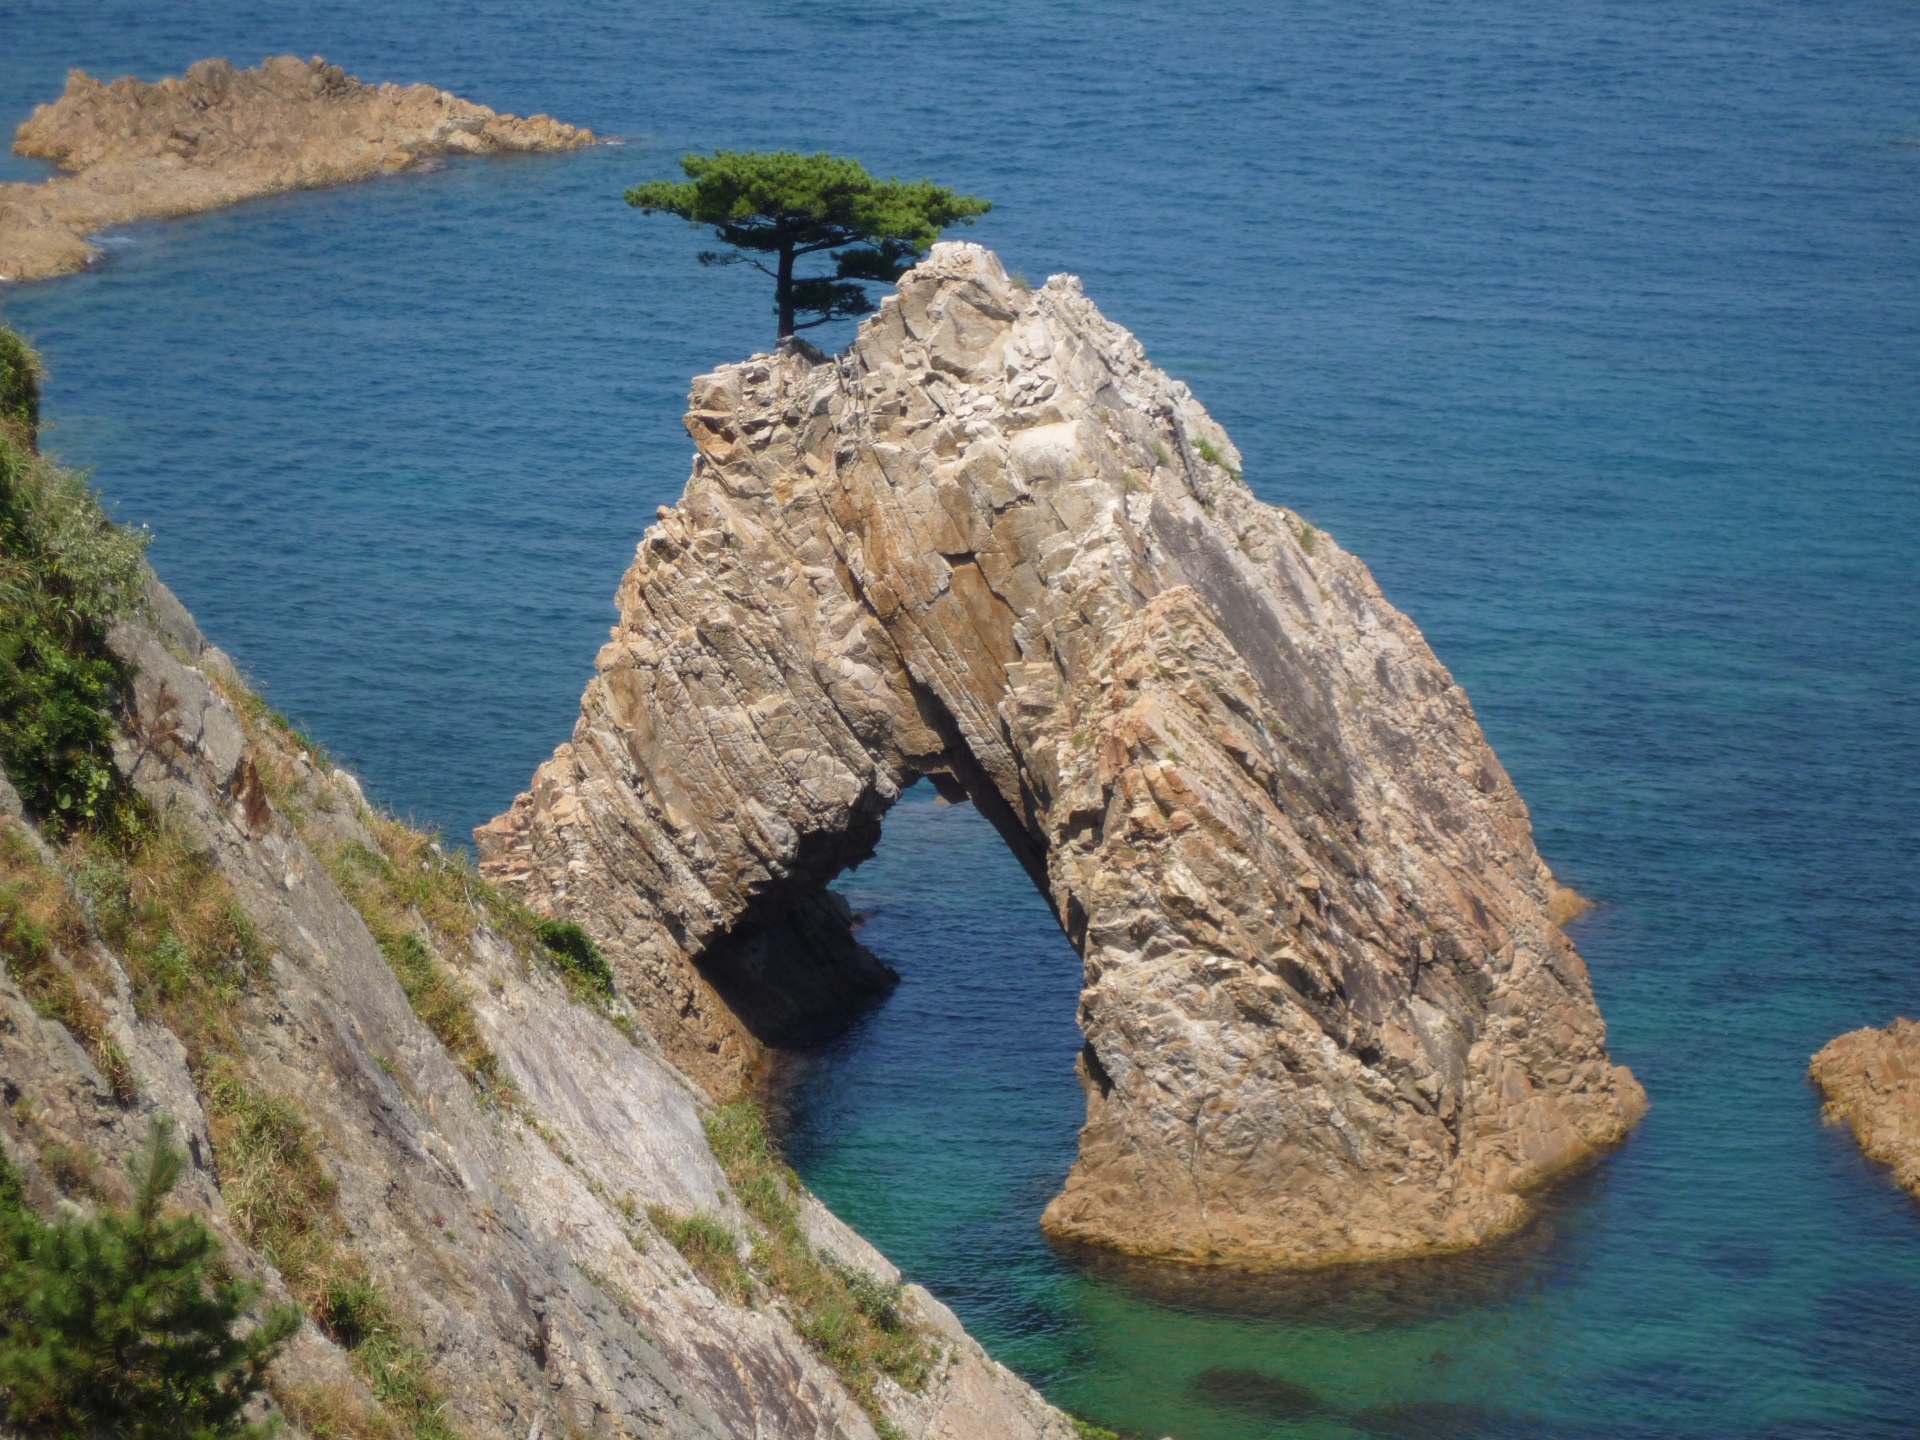 周囲50m、高さ10mの洞門の頂きに見事な松が生えている「千貫松島」も浦富海岸を代表する奇岩のひとつ。